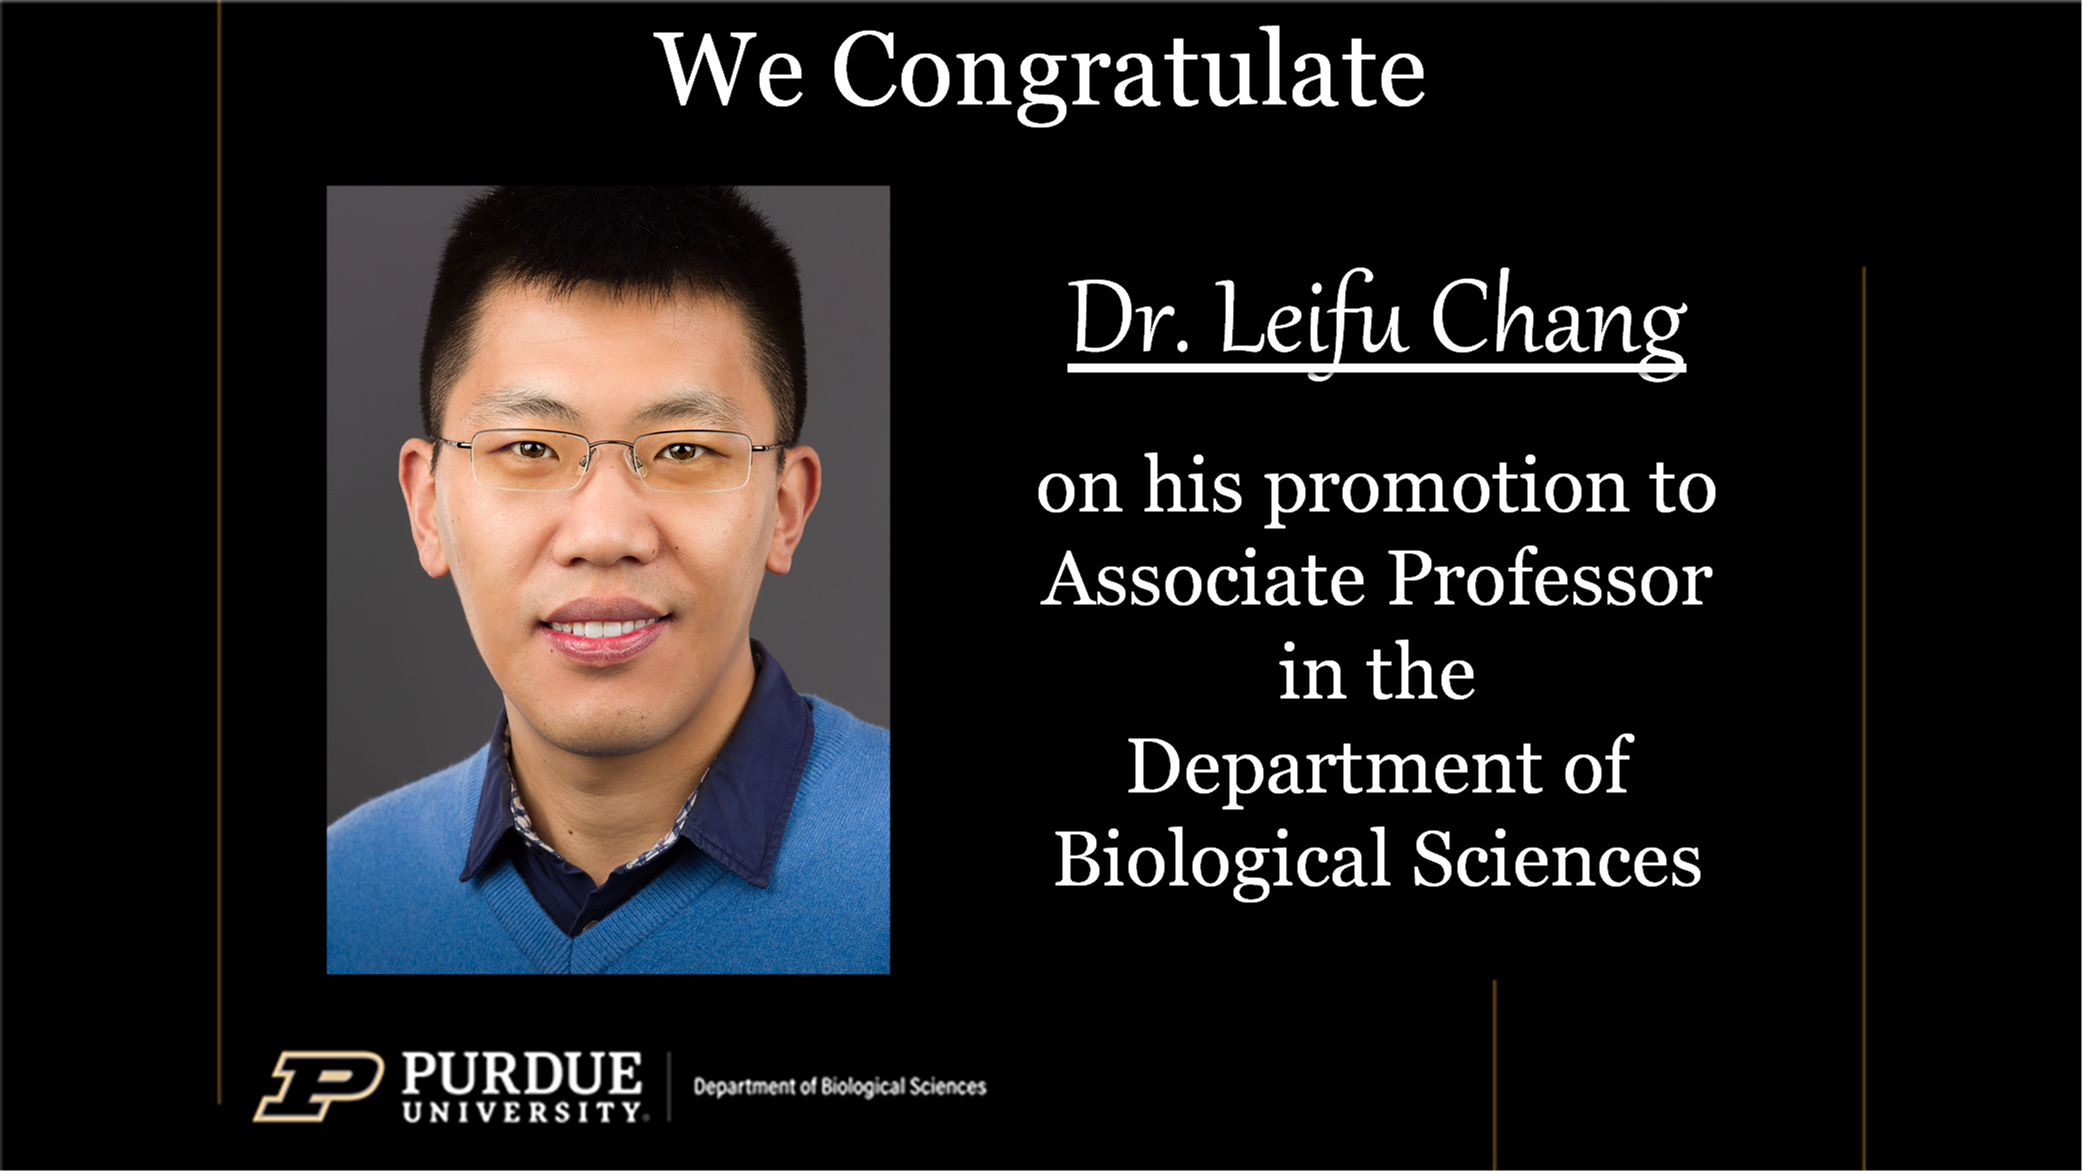 Dr. Leifu Chang